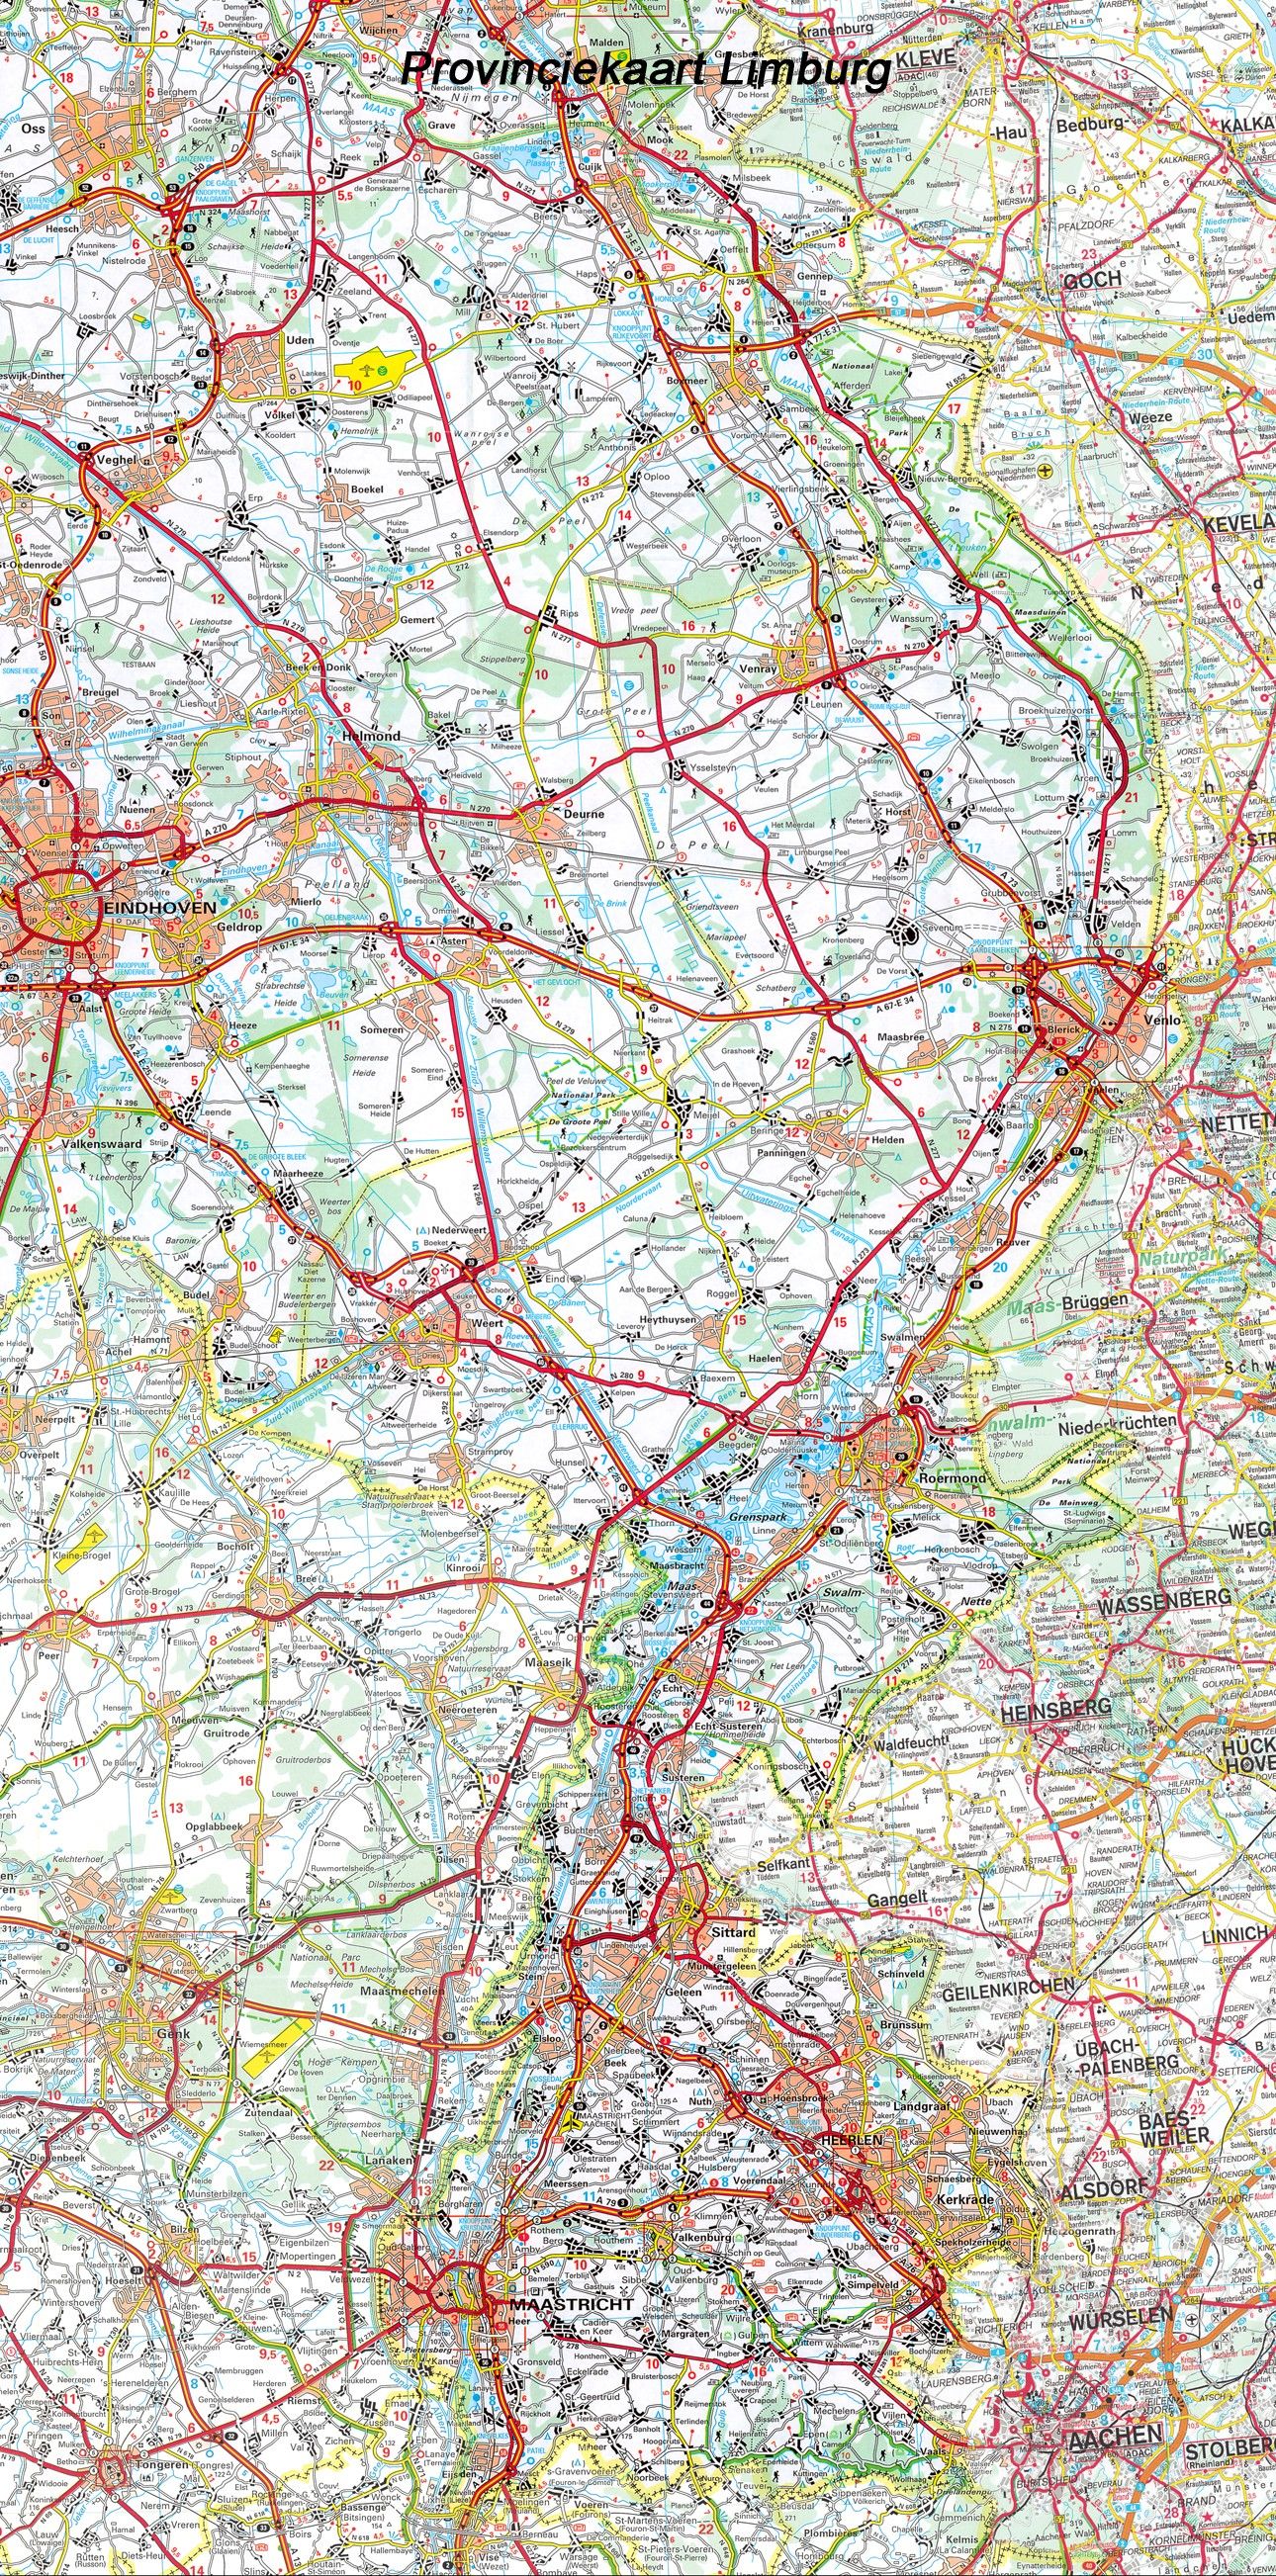 Provincie kaart Limburg 1:100.000